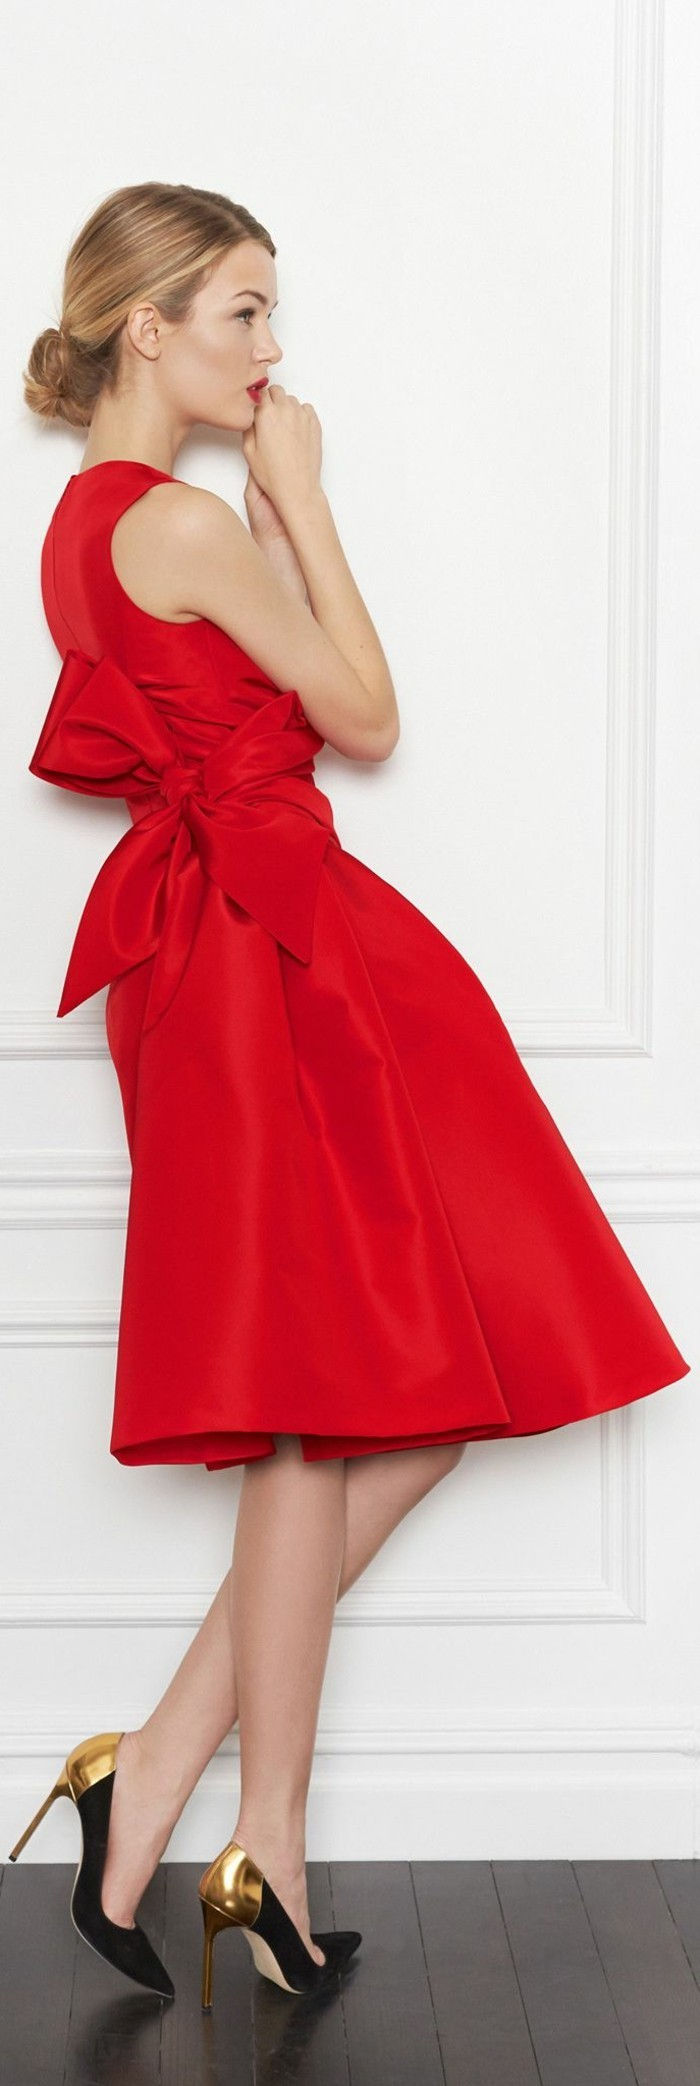 röd klänning skor som Golden skor klackar Red-dress-blond-hår vacker frisyr-idéer-look